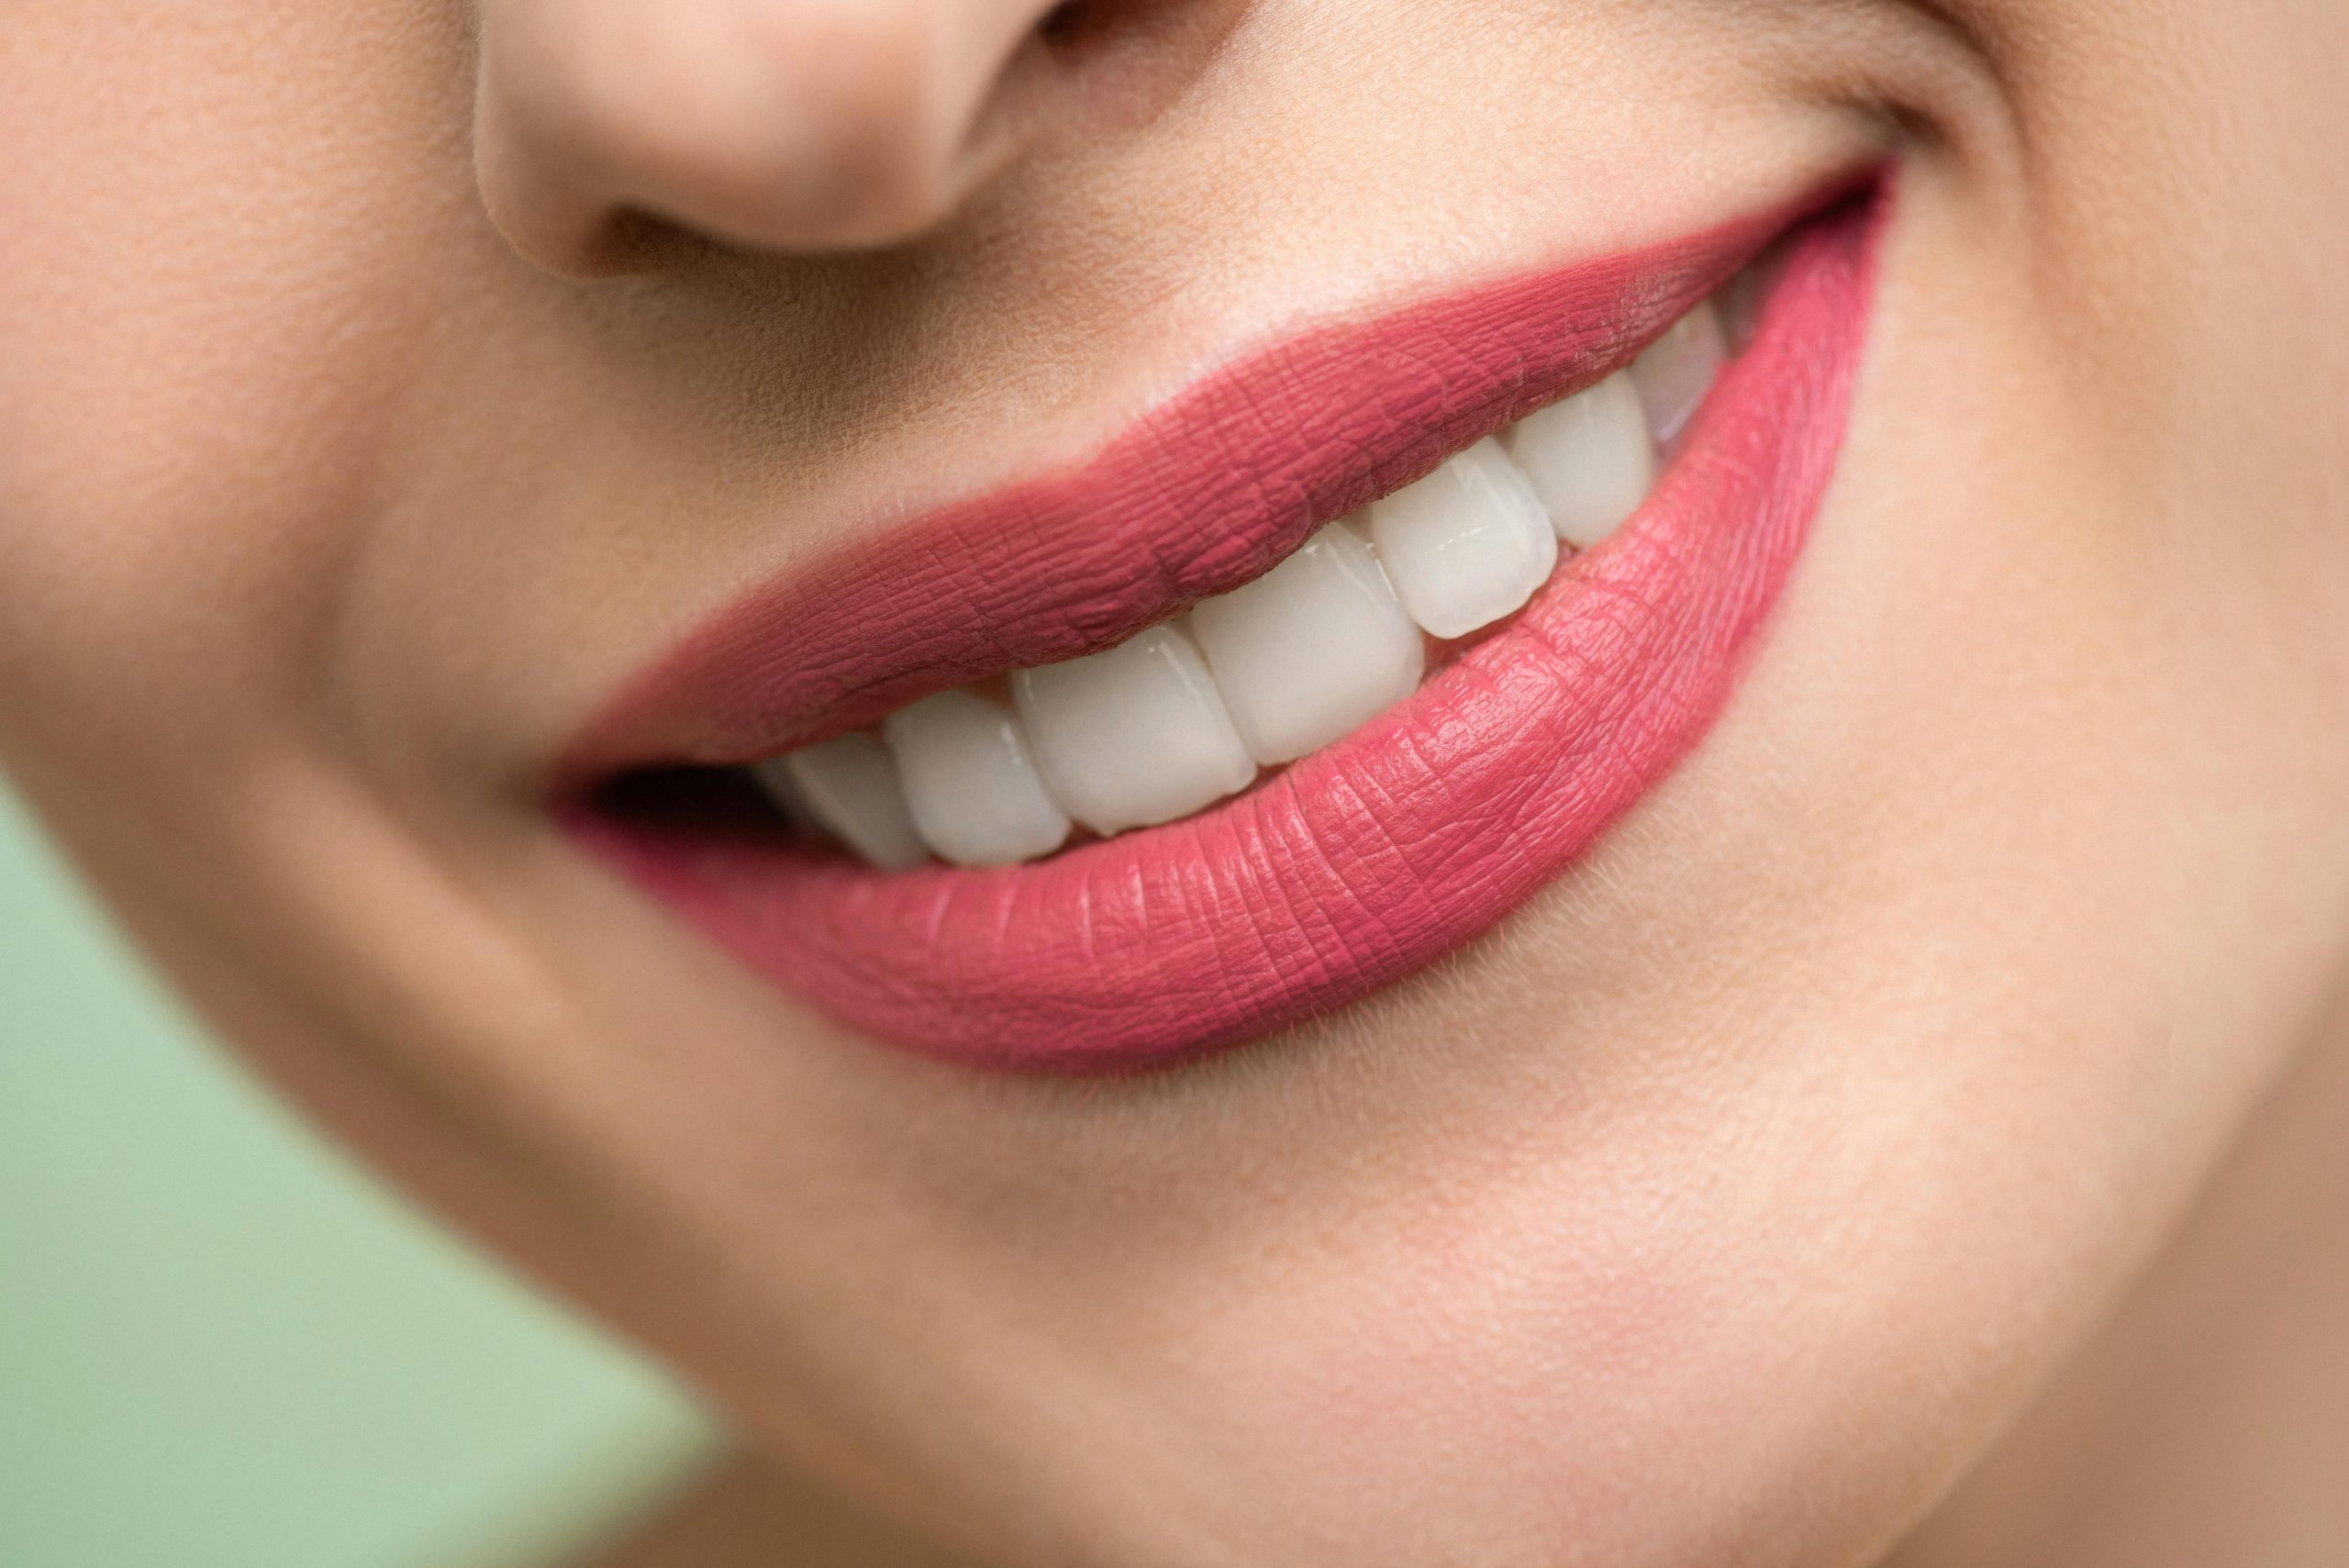 Aumento de labios con ácido hialurónico: Los pasos para elegir al especialista adecuado y obtener resultados seguros